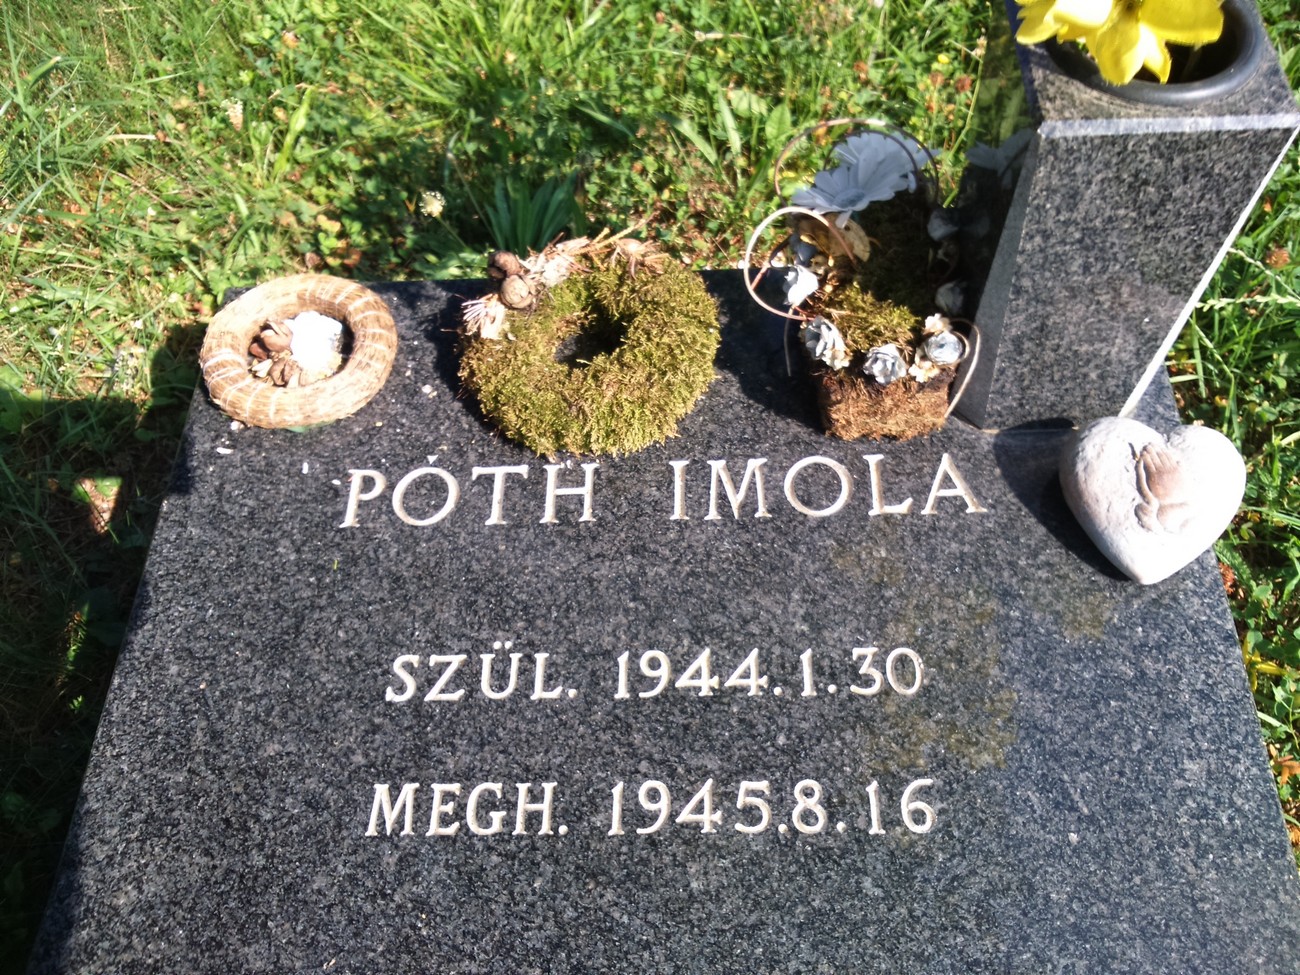 A szentlászlói református lelkész lányának síremléke, aki néhány nappal a hrastoveci táborból való hazatérést követően halt meg. A fotót készítette: Kovács Attila.